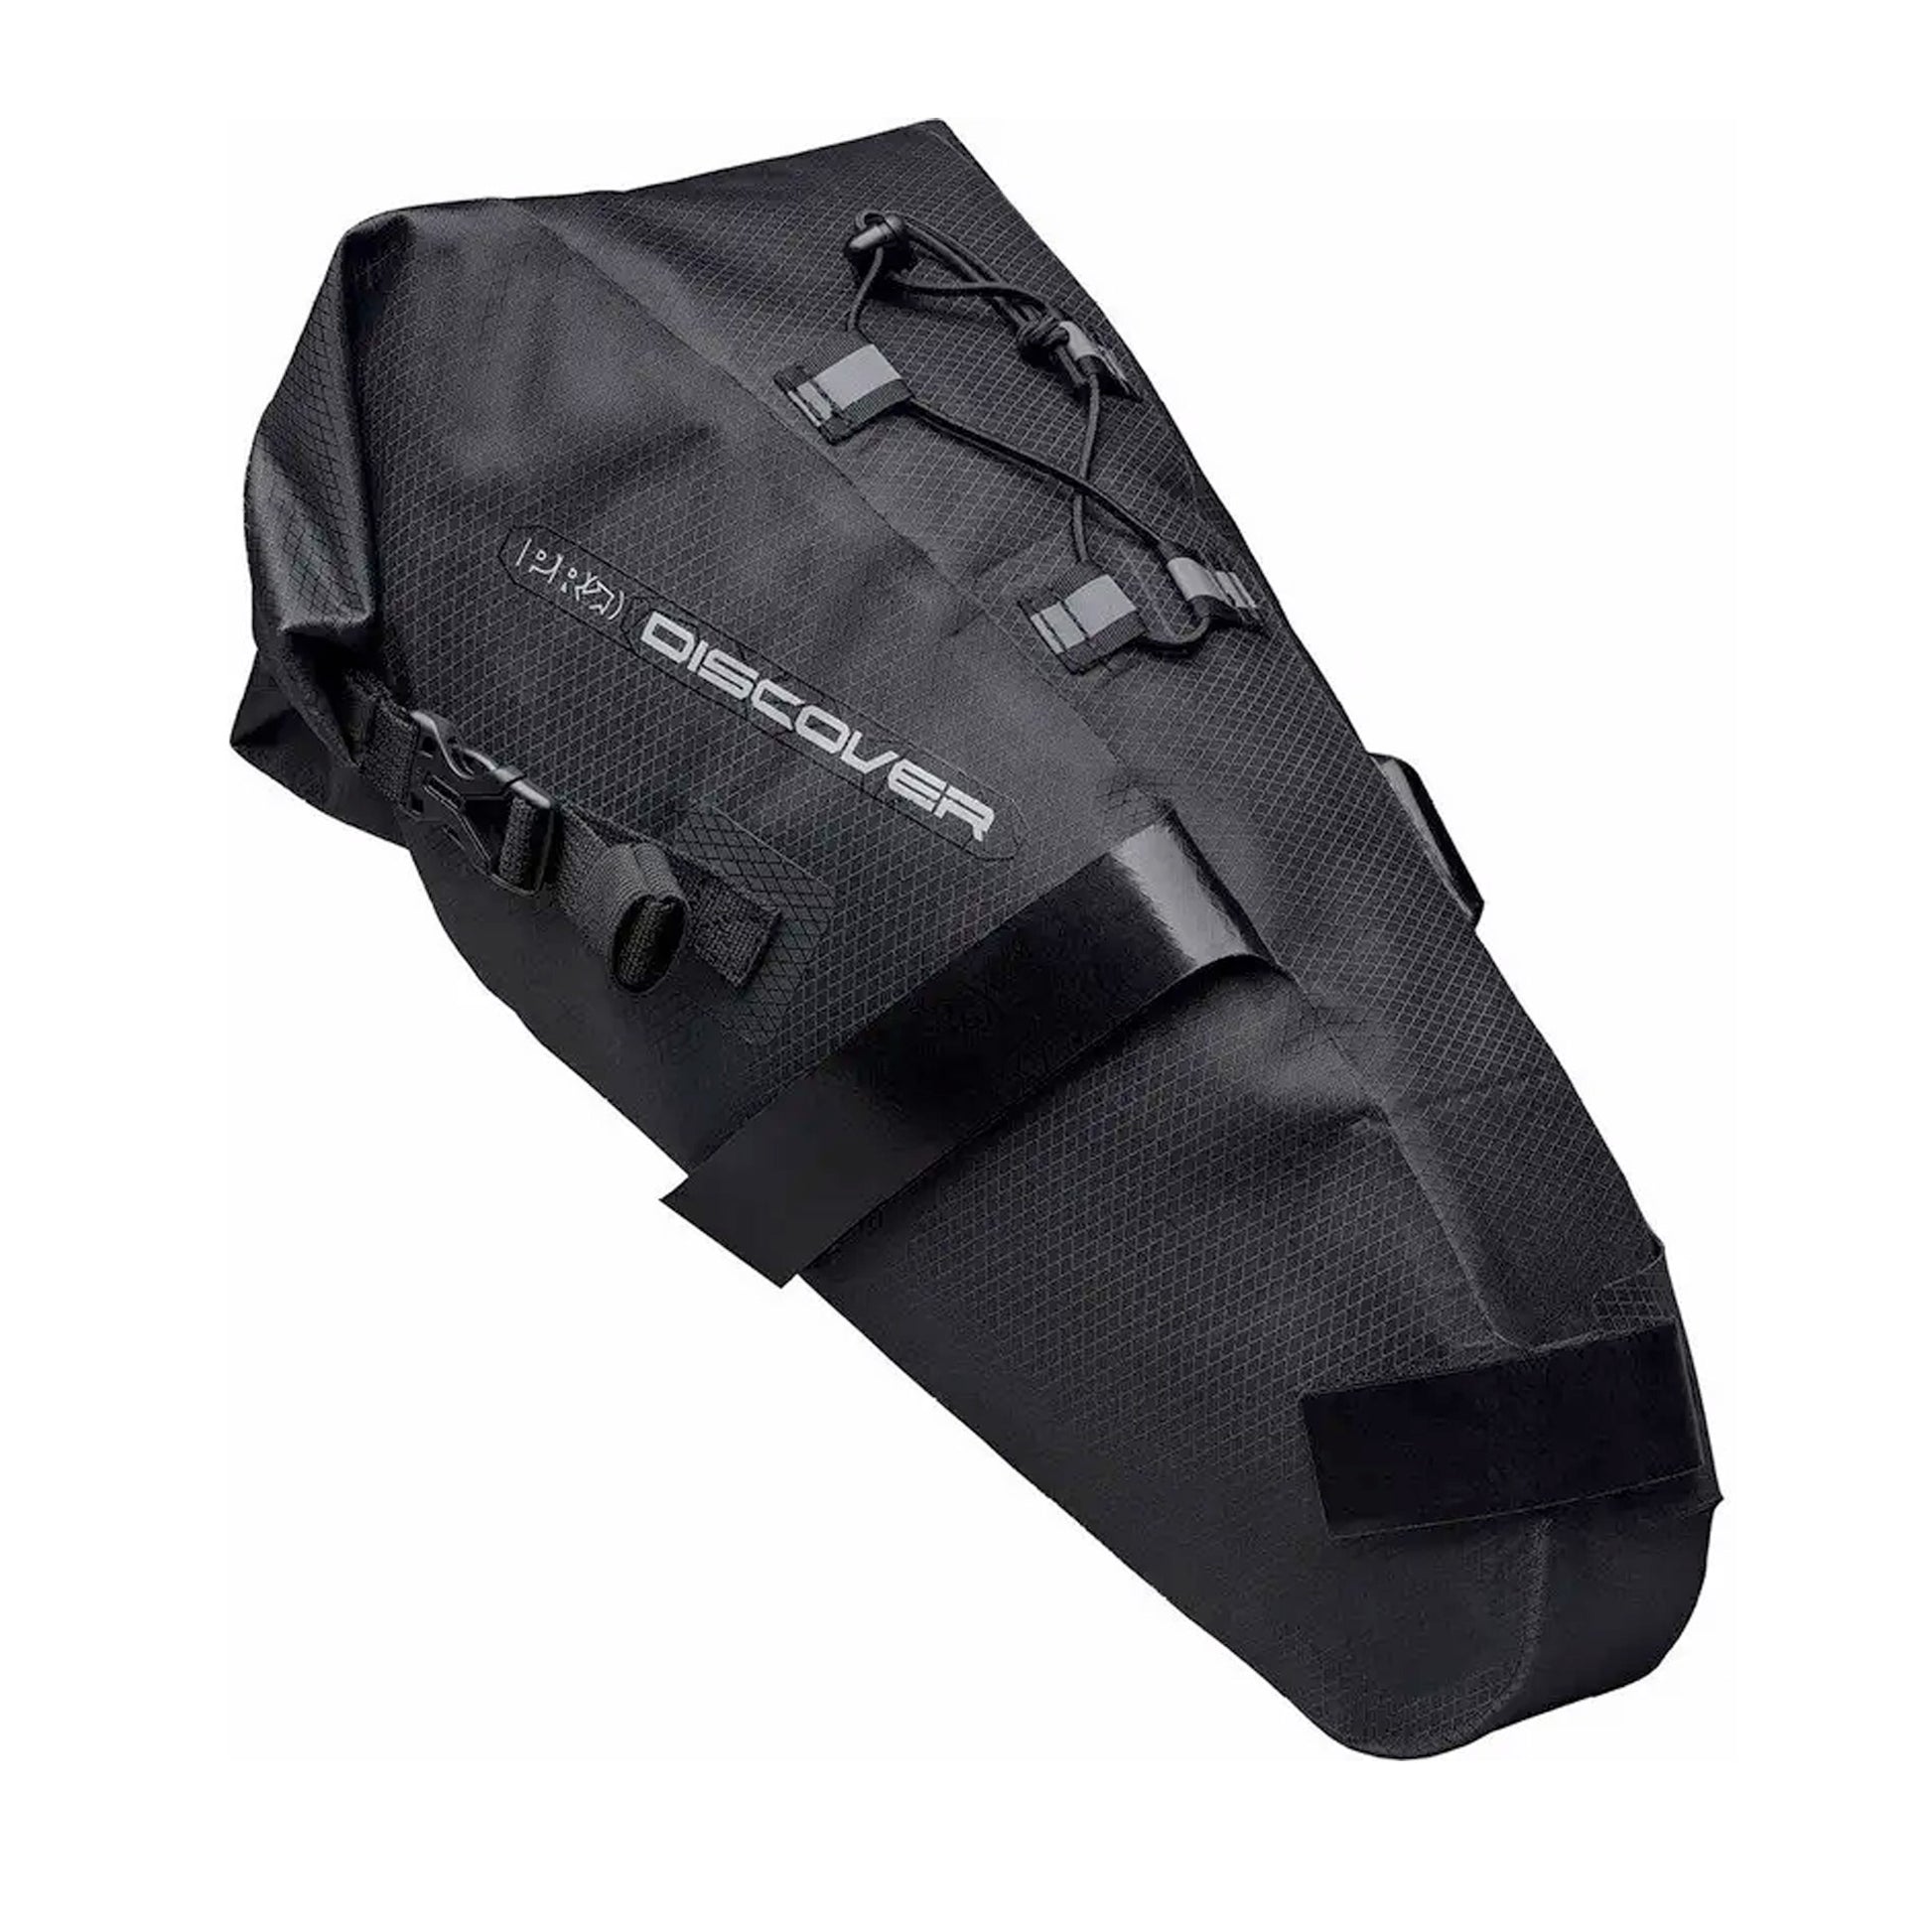 Pro Discover Team Gravel Bag - 10 Litre Seatpost Bag Black, buy online at Woolys Wheels Sydney